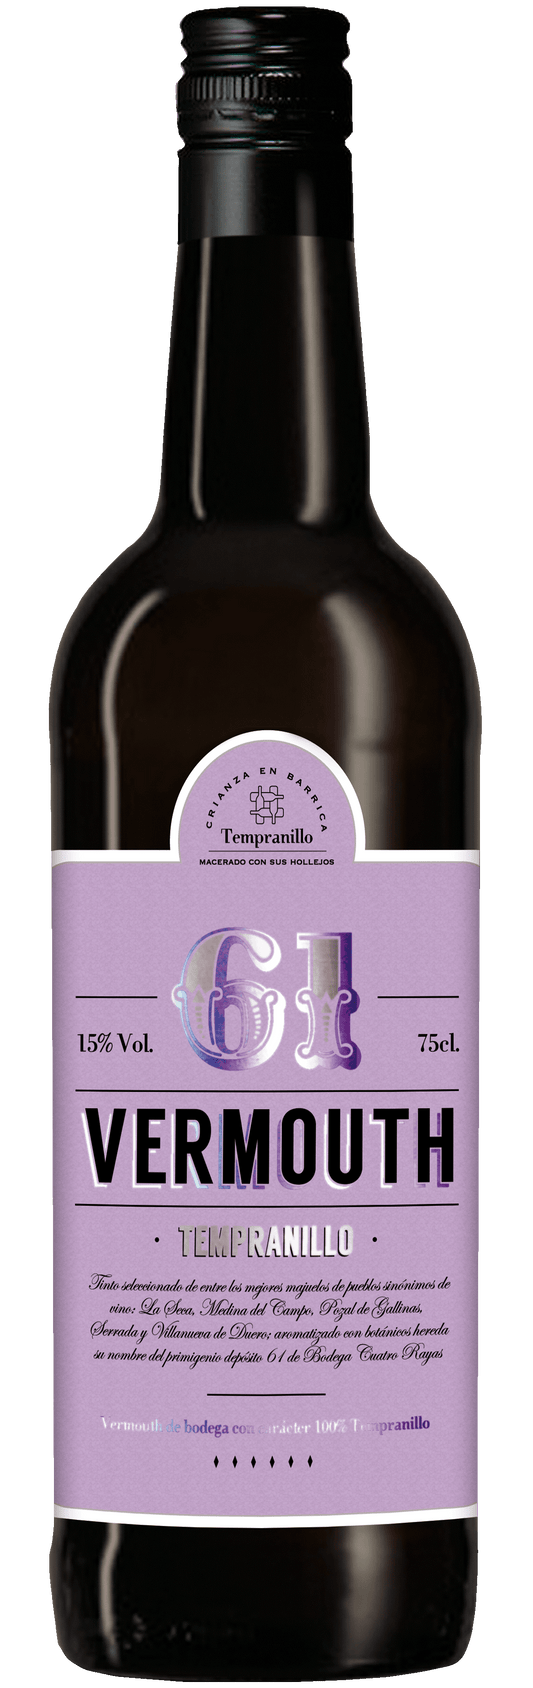 Vermouth Tempranillo